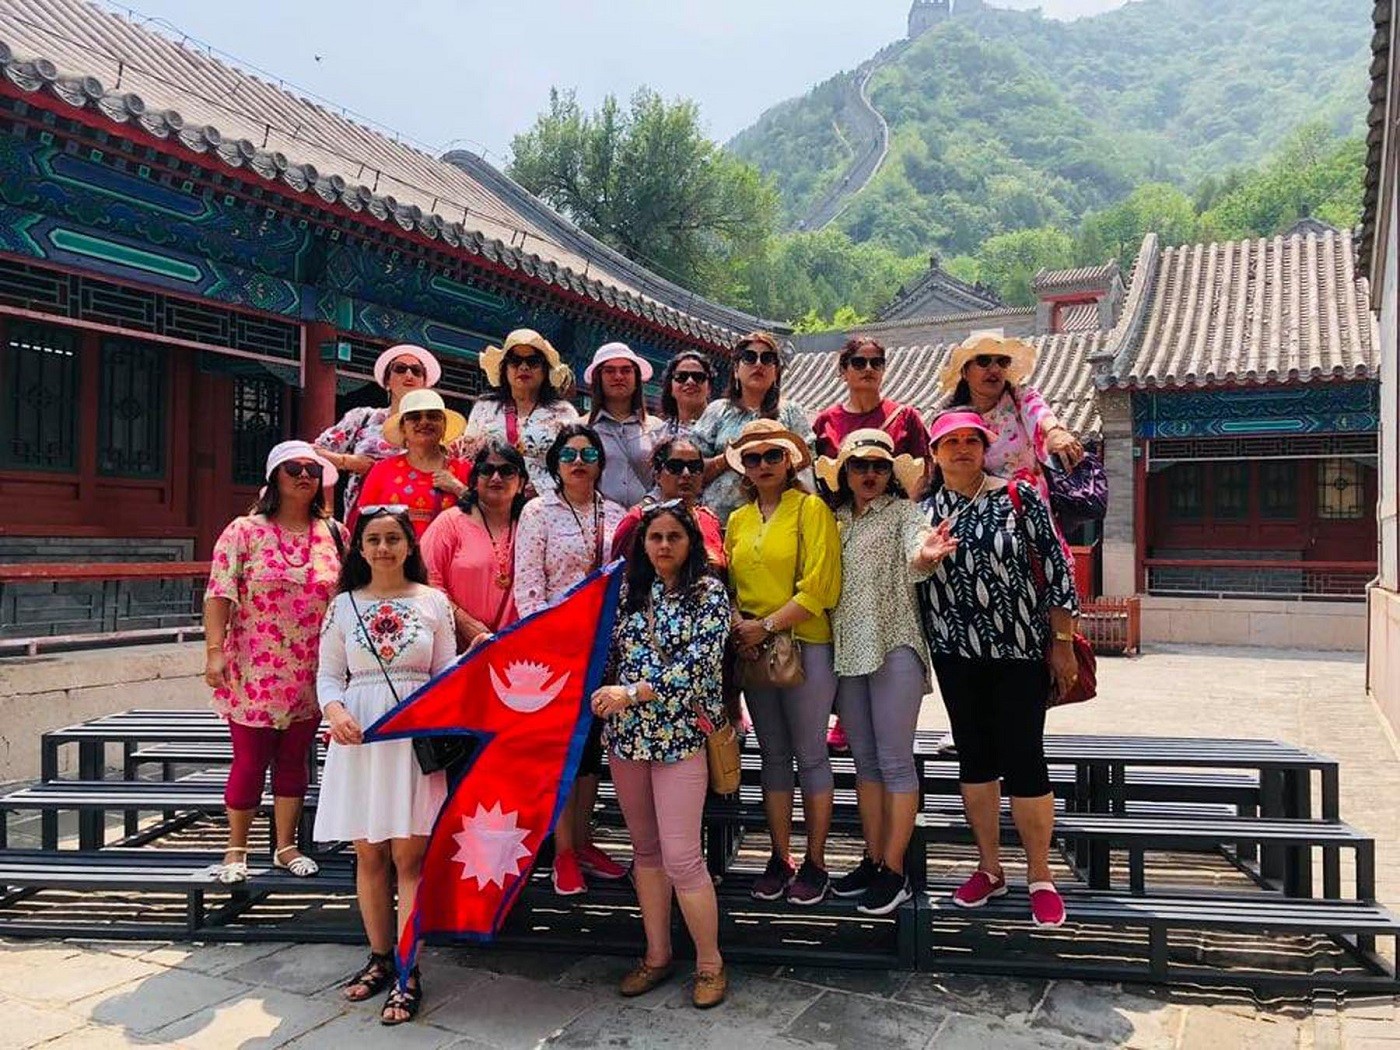 नेपाल भ्रमण वर्ष २०२० प्रचार प्रसारको लागि चीन भ्रमणमा रहेका पोखरा महिला पर्यटन व्यवसायी मञ्चका टोली चीनको बेइजिङमा ।